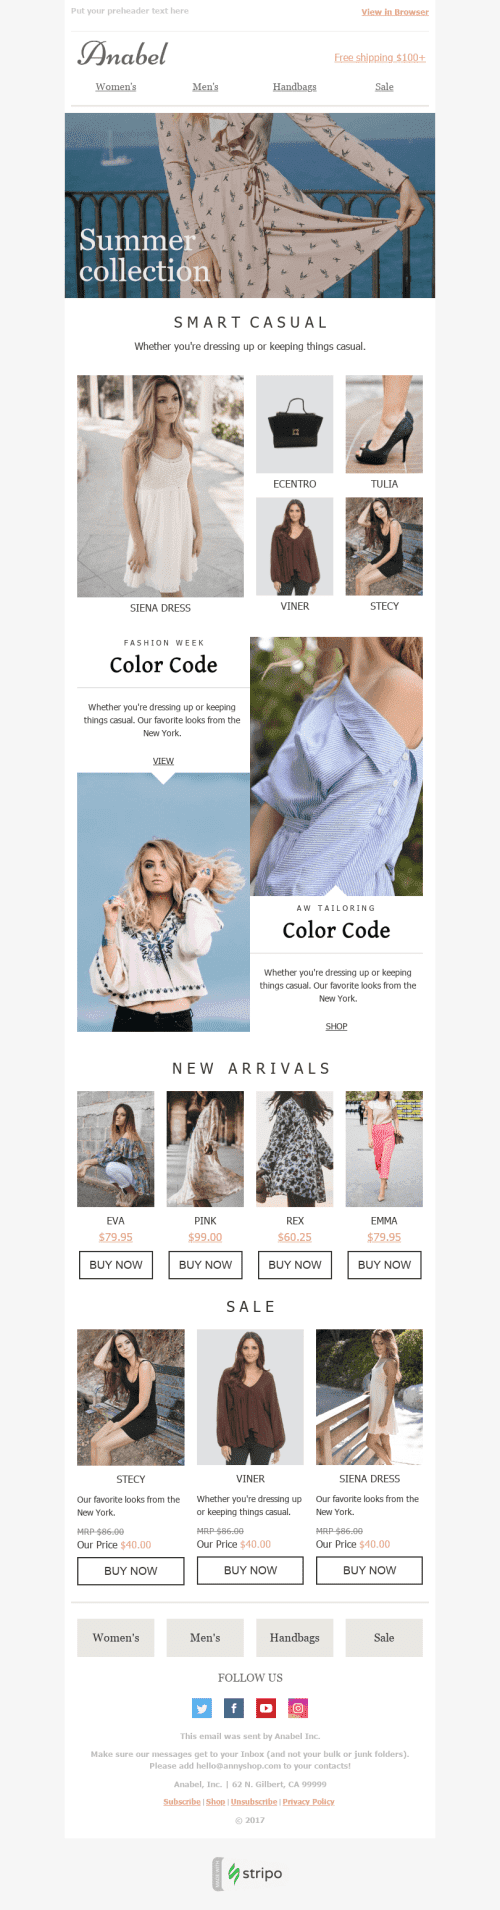 Plantilla de correo electrónico "Colores brillantes" de Promoción para la industria de Moda Vista de móvil